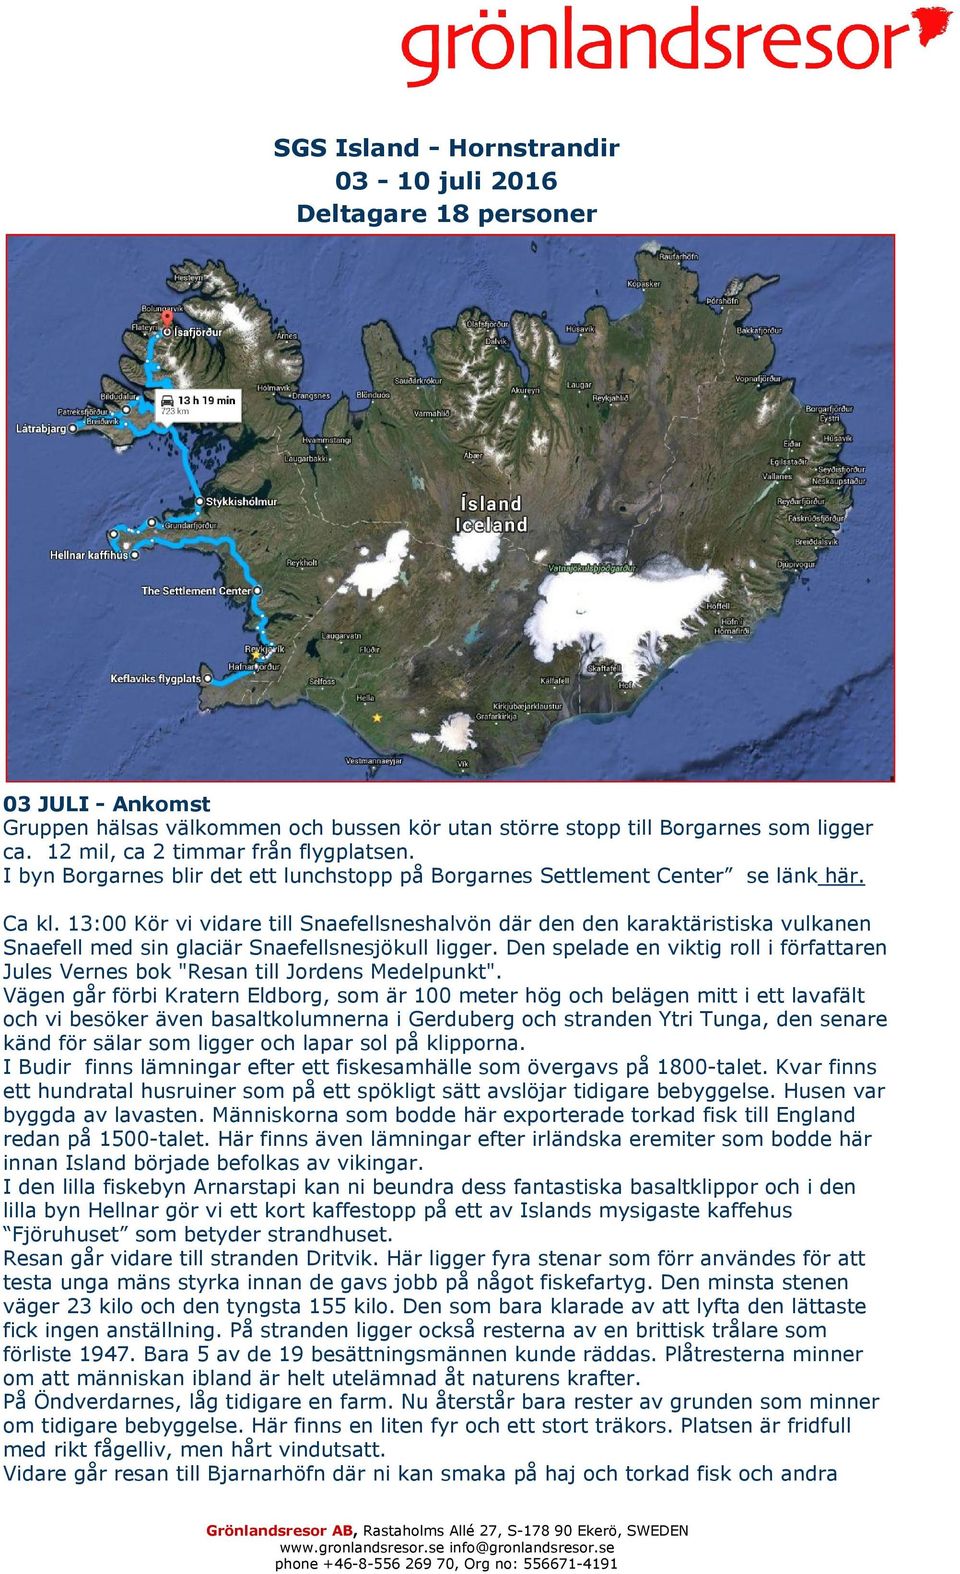 13:00 Kör vi vidare till Snaefellsneshalvön där den den karaktäristiska vulkanen Snaefell med sin glaciär Snaefellsnesjökull ligger.